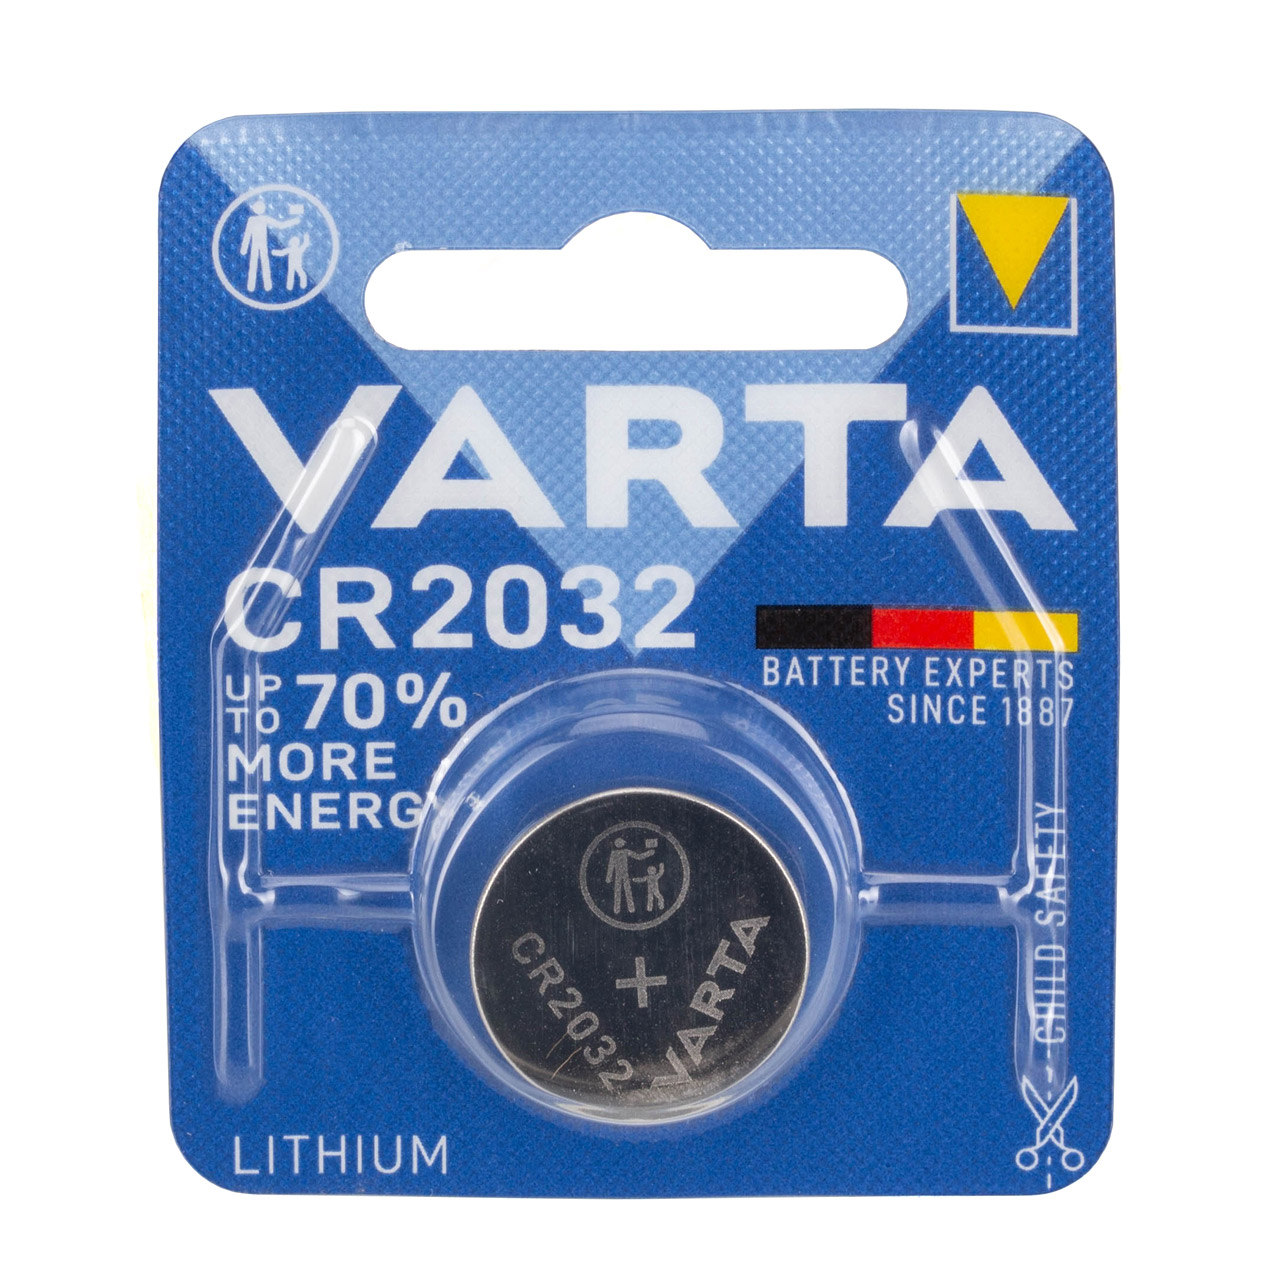 10x VARTA Lithium 3V CR2032 Knopfzelle Knopfbatterie Batterie (MHD 05.2033)